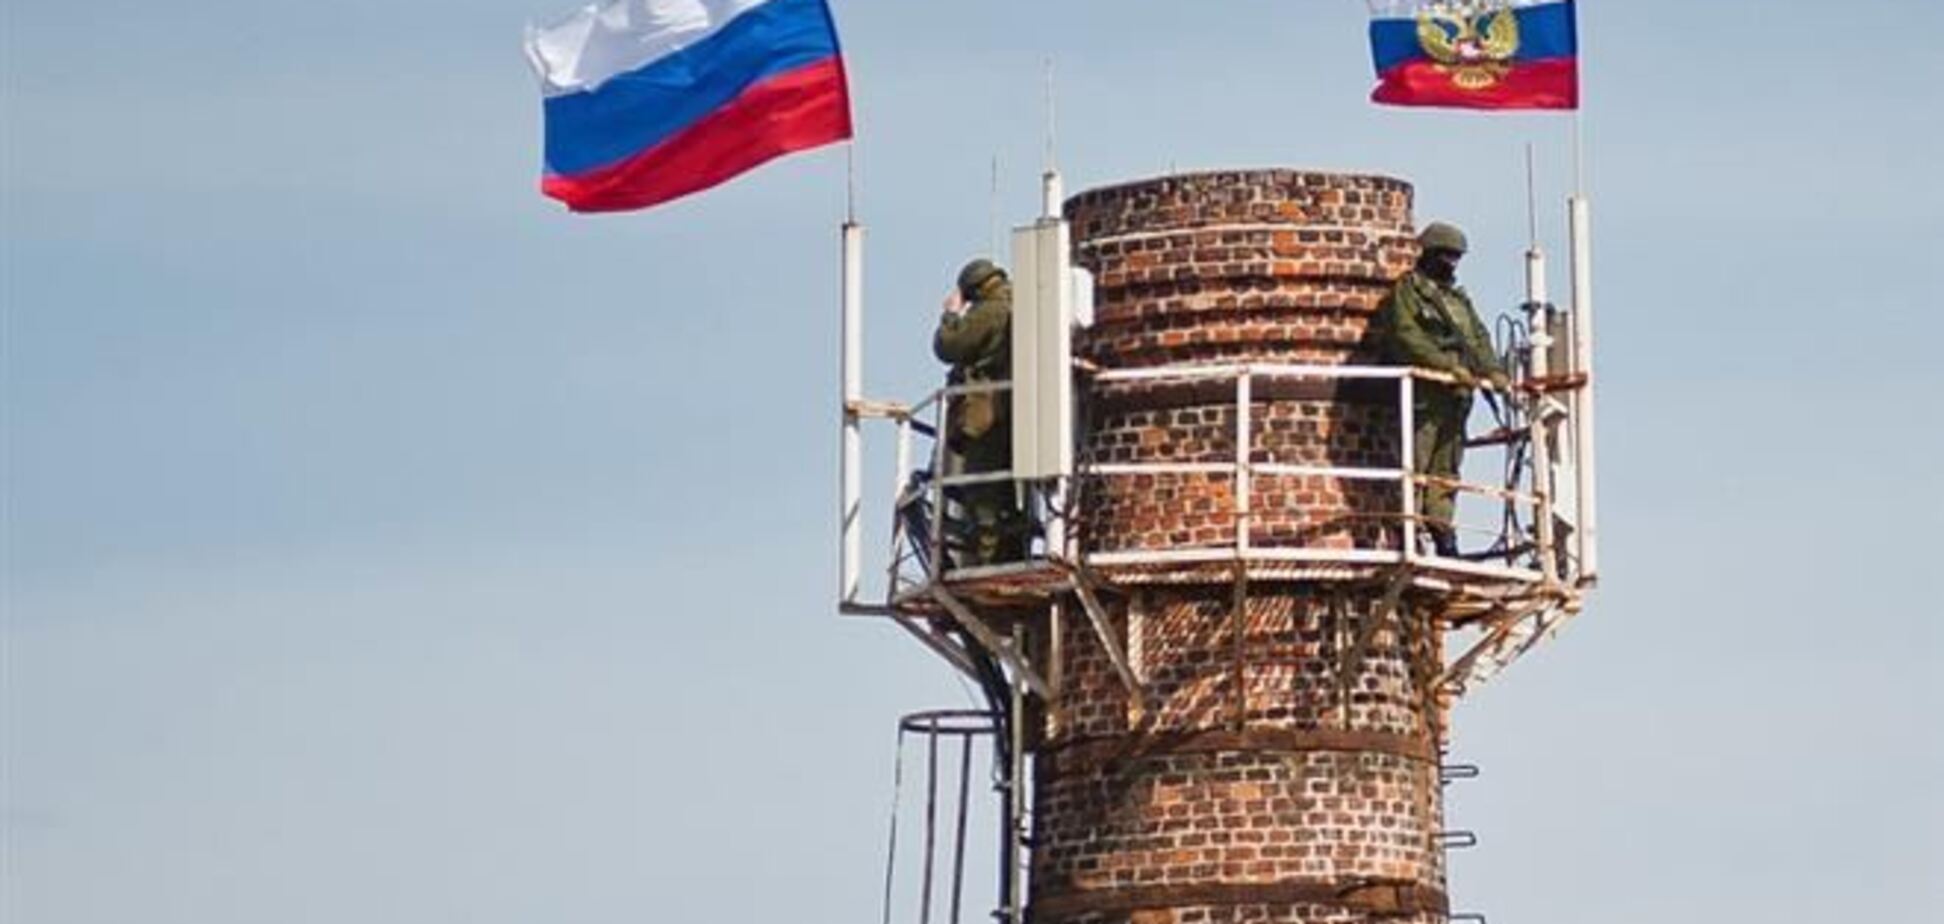 Російські окупанти силою змусили військових метрологів покинути базу - Міноборони